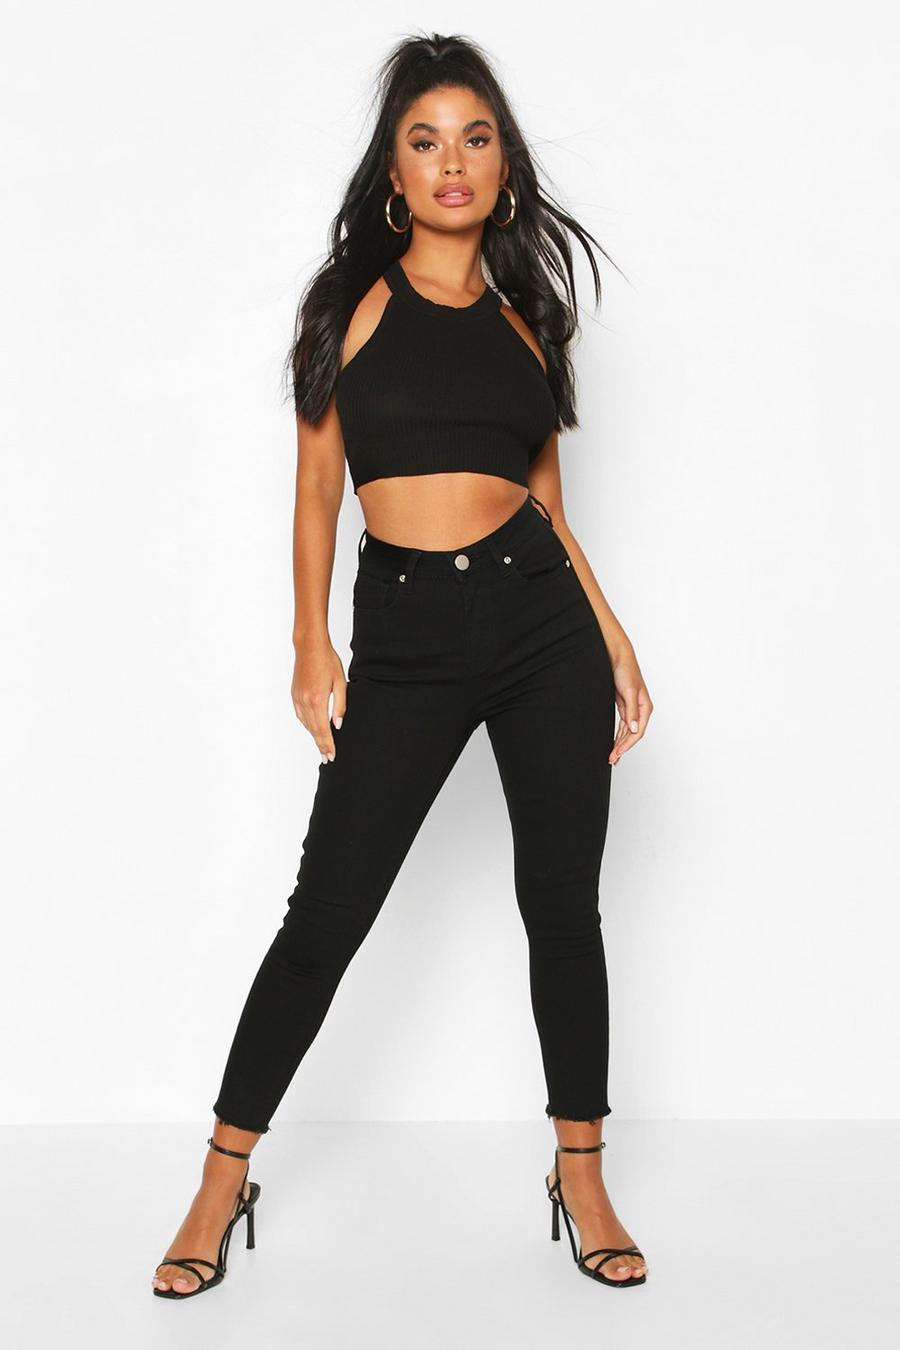 שחור nero סקיני ג'ינס עם מכפלת פרומה פטיט